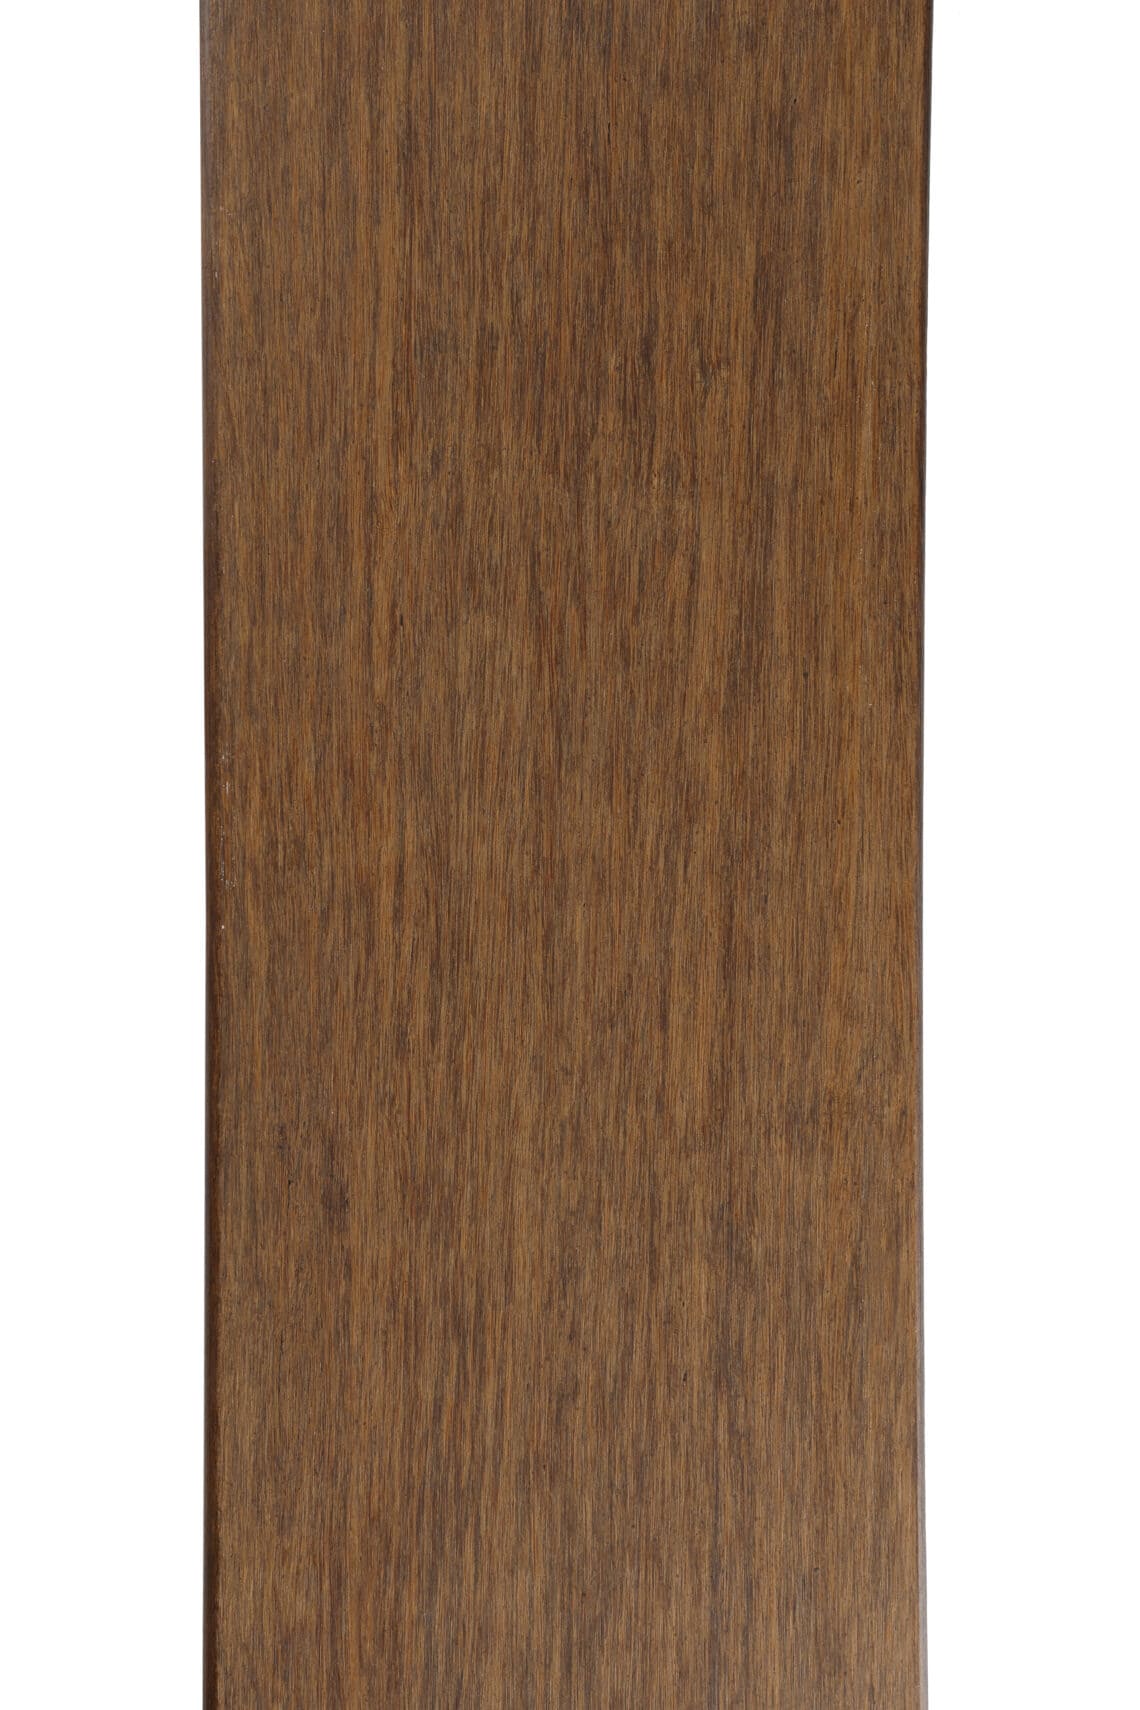 bamboo decking board